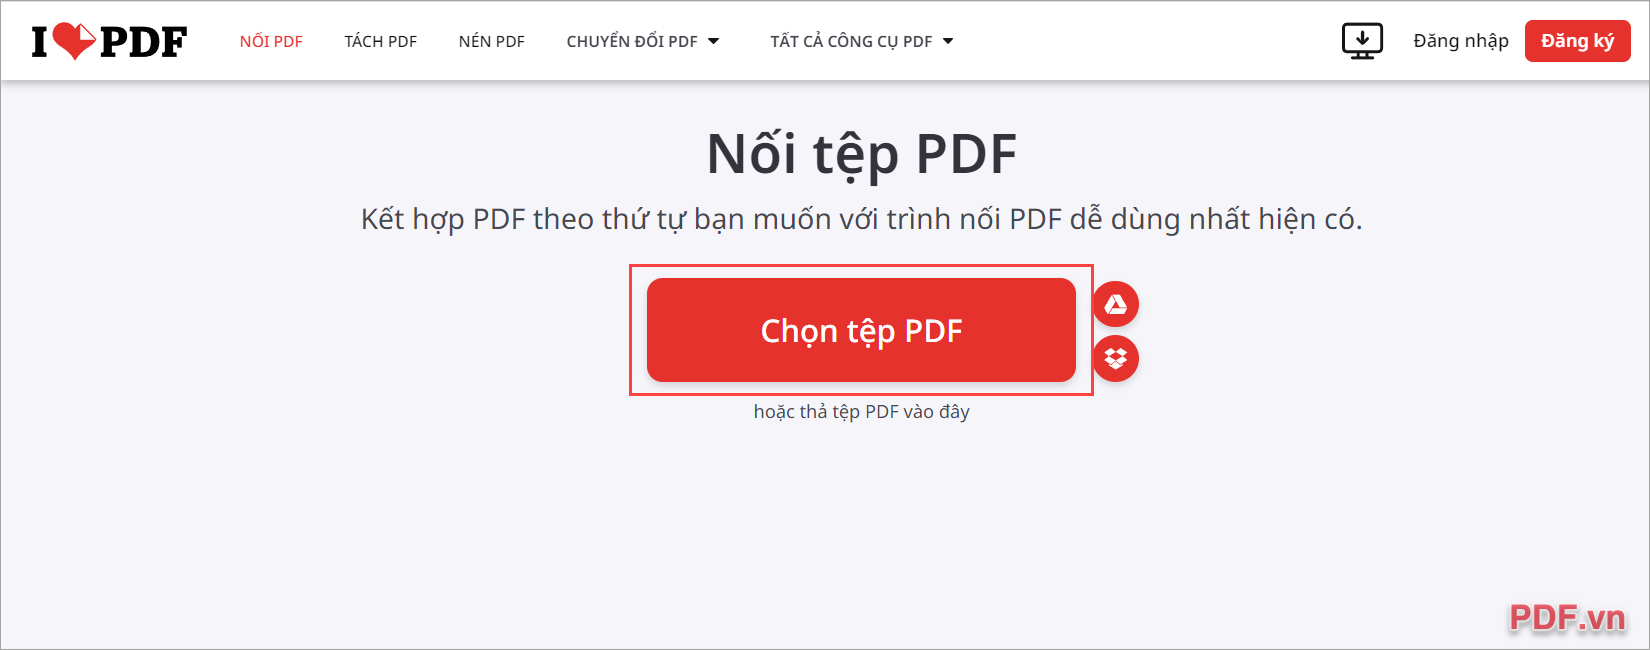 Nhấn Chọn tệp PDF để thêm file PDF gốc cần chèn thêm trang